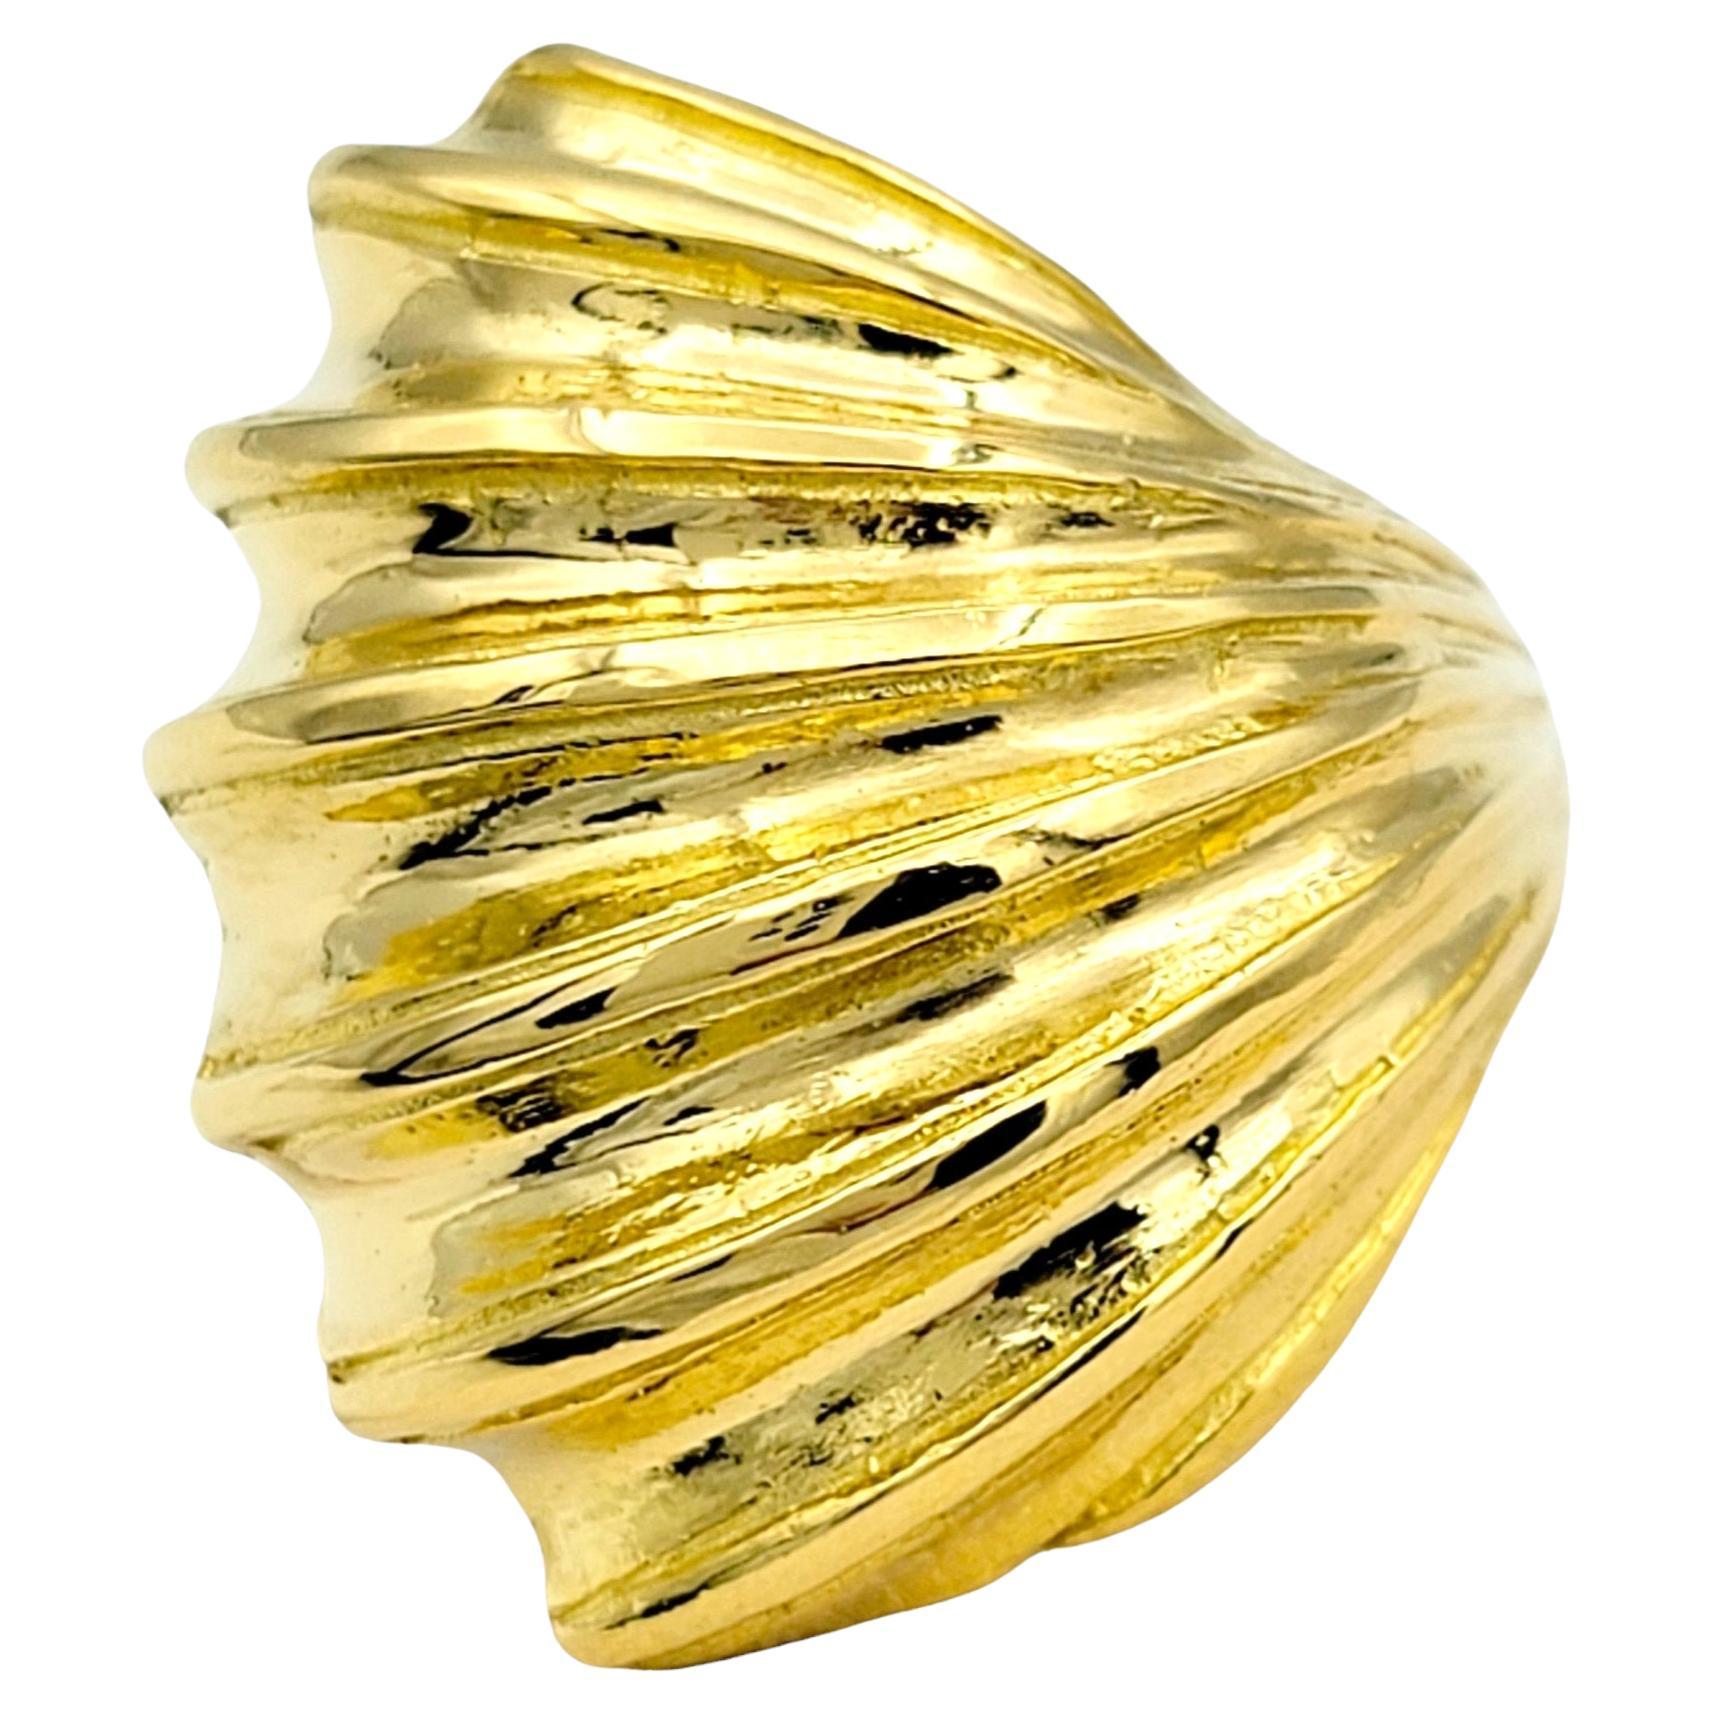 Ringgröße: 5.25

Dieser wunderschöne Ring mit Muschelmuster von Ilias Lalaounis aus 22 Karat Gelbgold ist ein atemberaubendes Schmuckstück, das die Schönheit der Natur einfängt. Inspiriert von den filigranen Mustern und Strukturen von Muscheln,